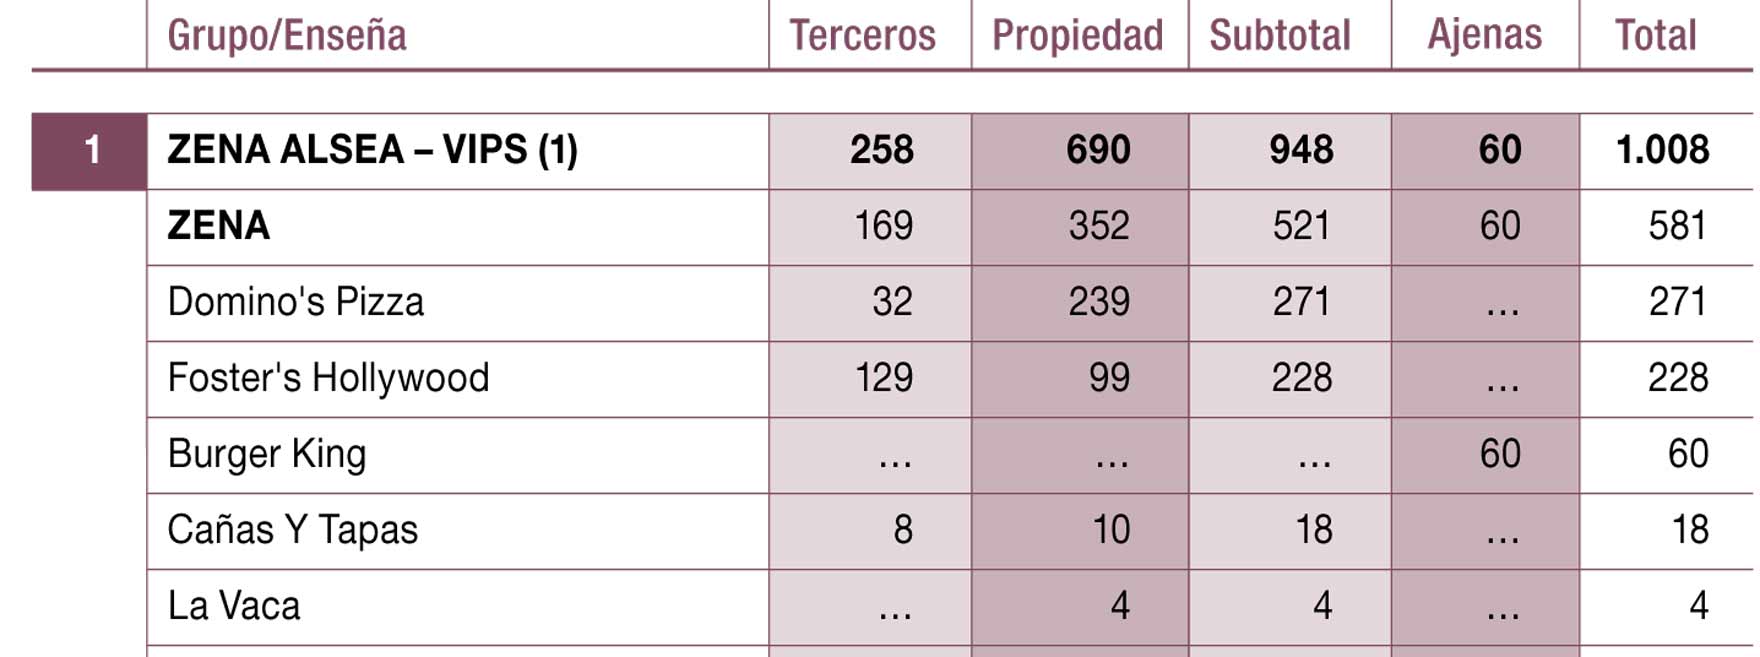 Principales grupos de restauración con presencia por número de locales en España